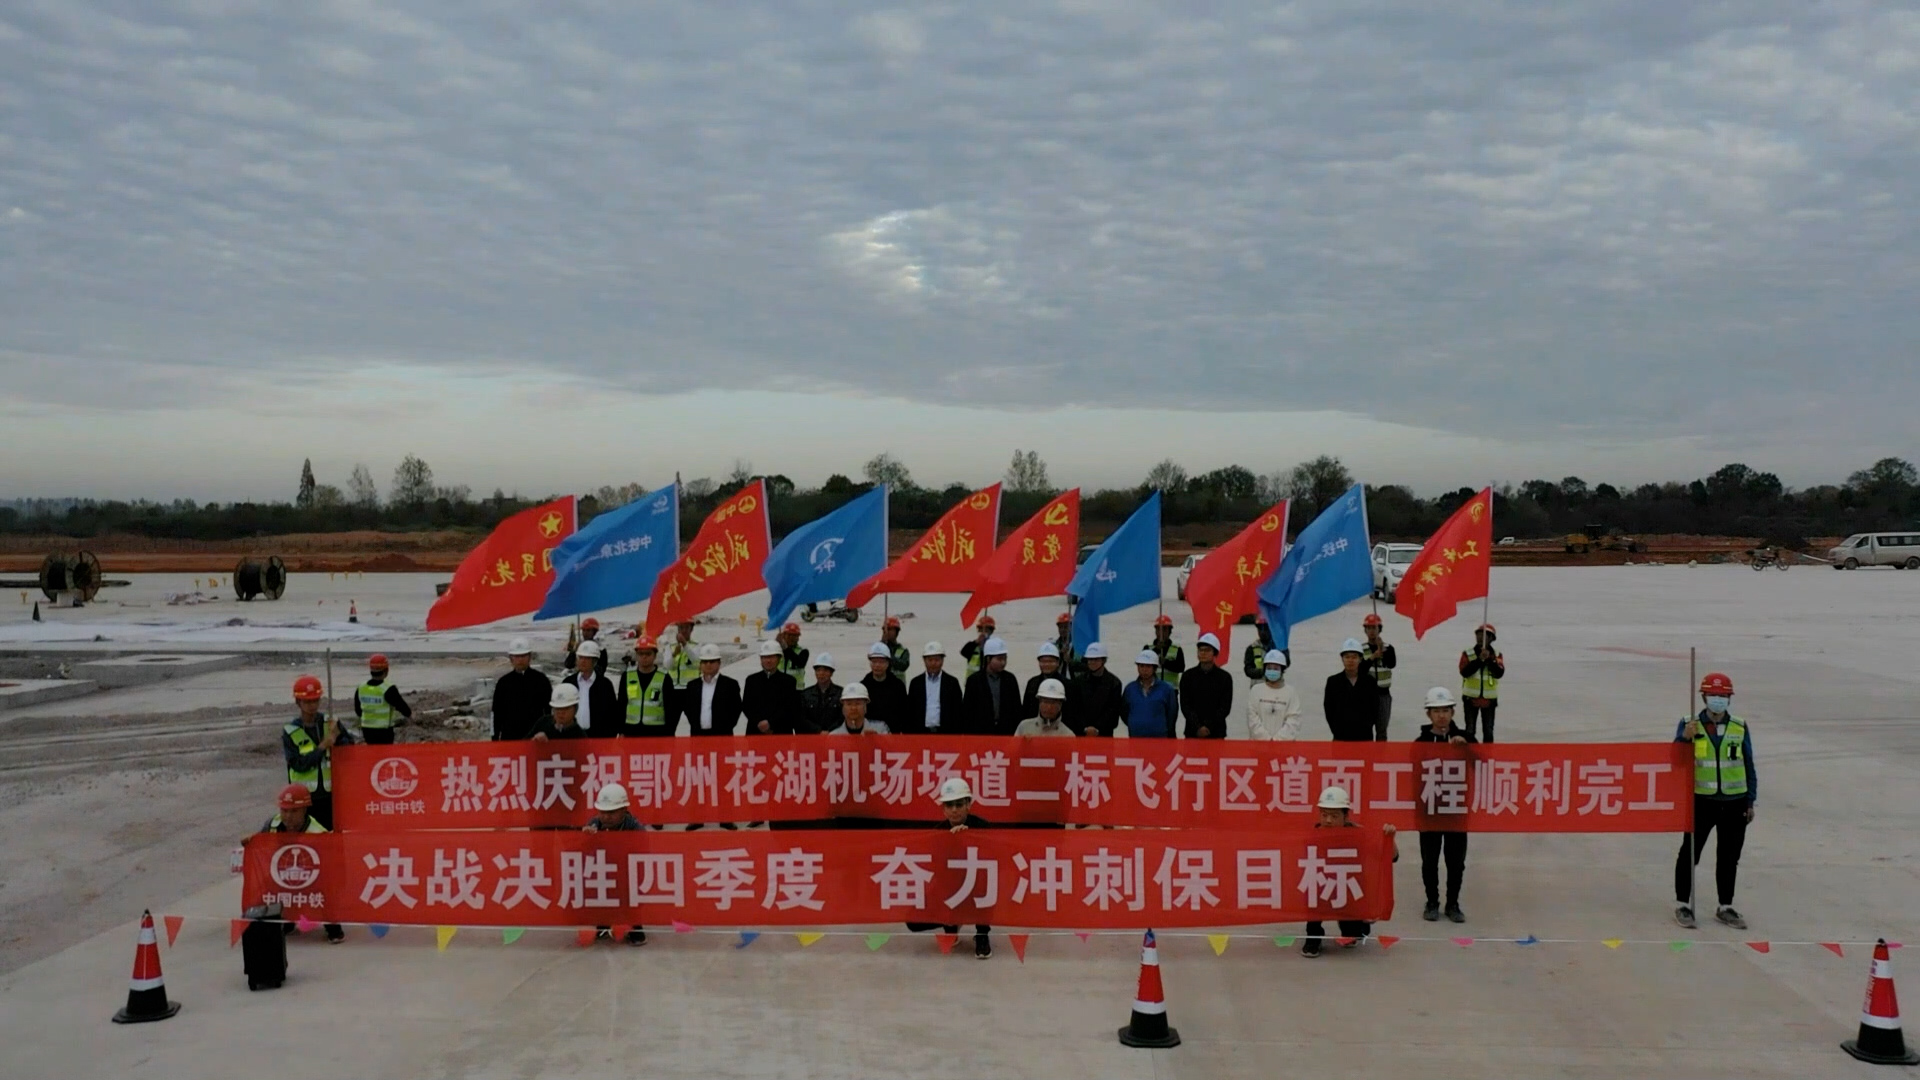 【2022·劳动创造幸福】鄂州花湖机场的青年建设者